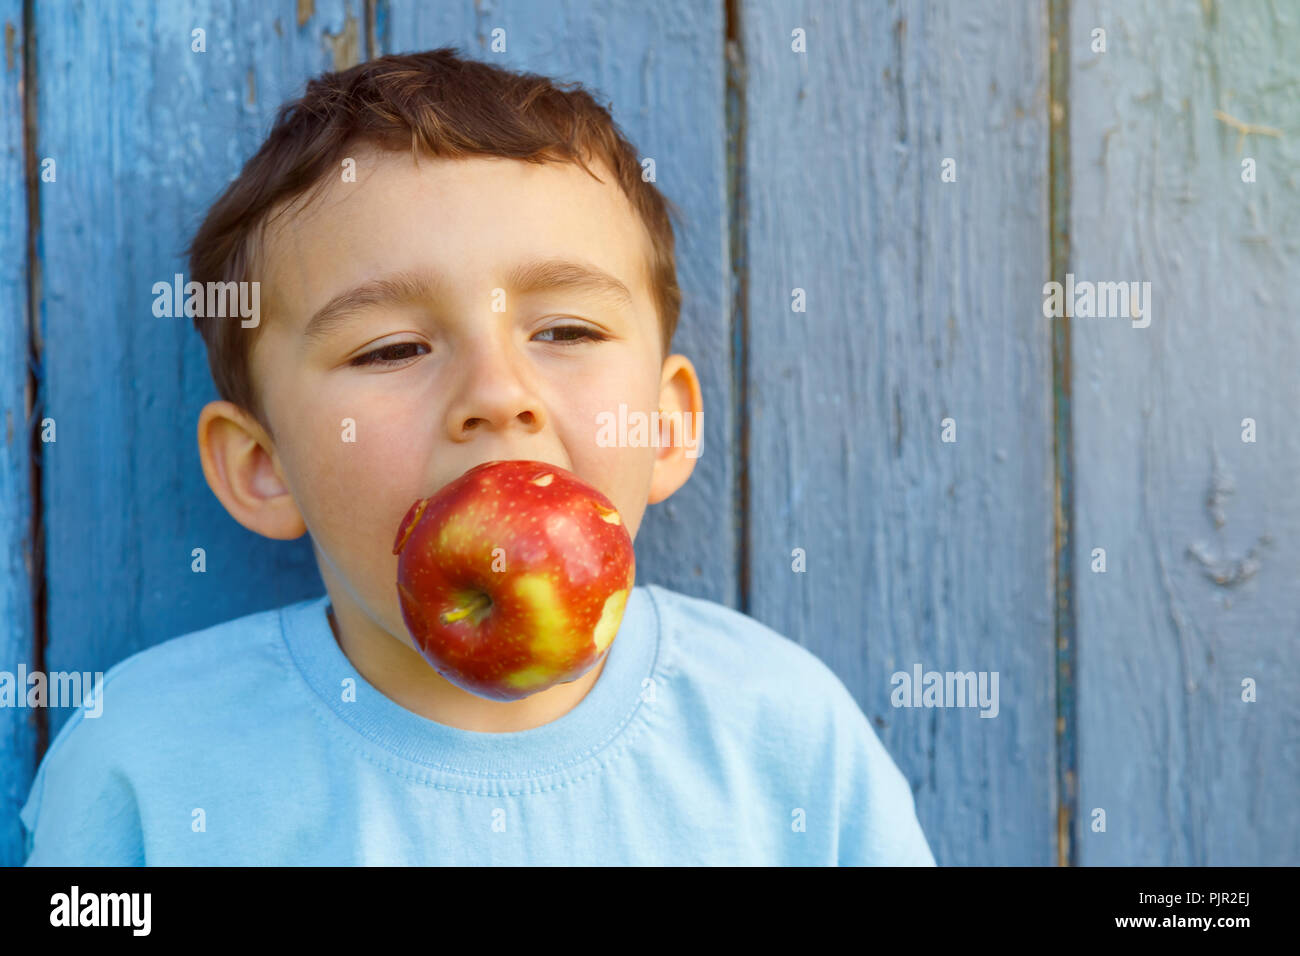 Apple frutto di mordere bambino kid little boy copyspace copia spazio all'aperto all'aperto al di fuori Foto Stock